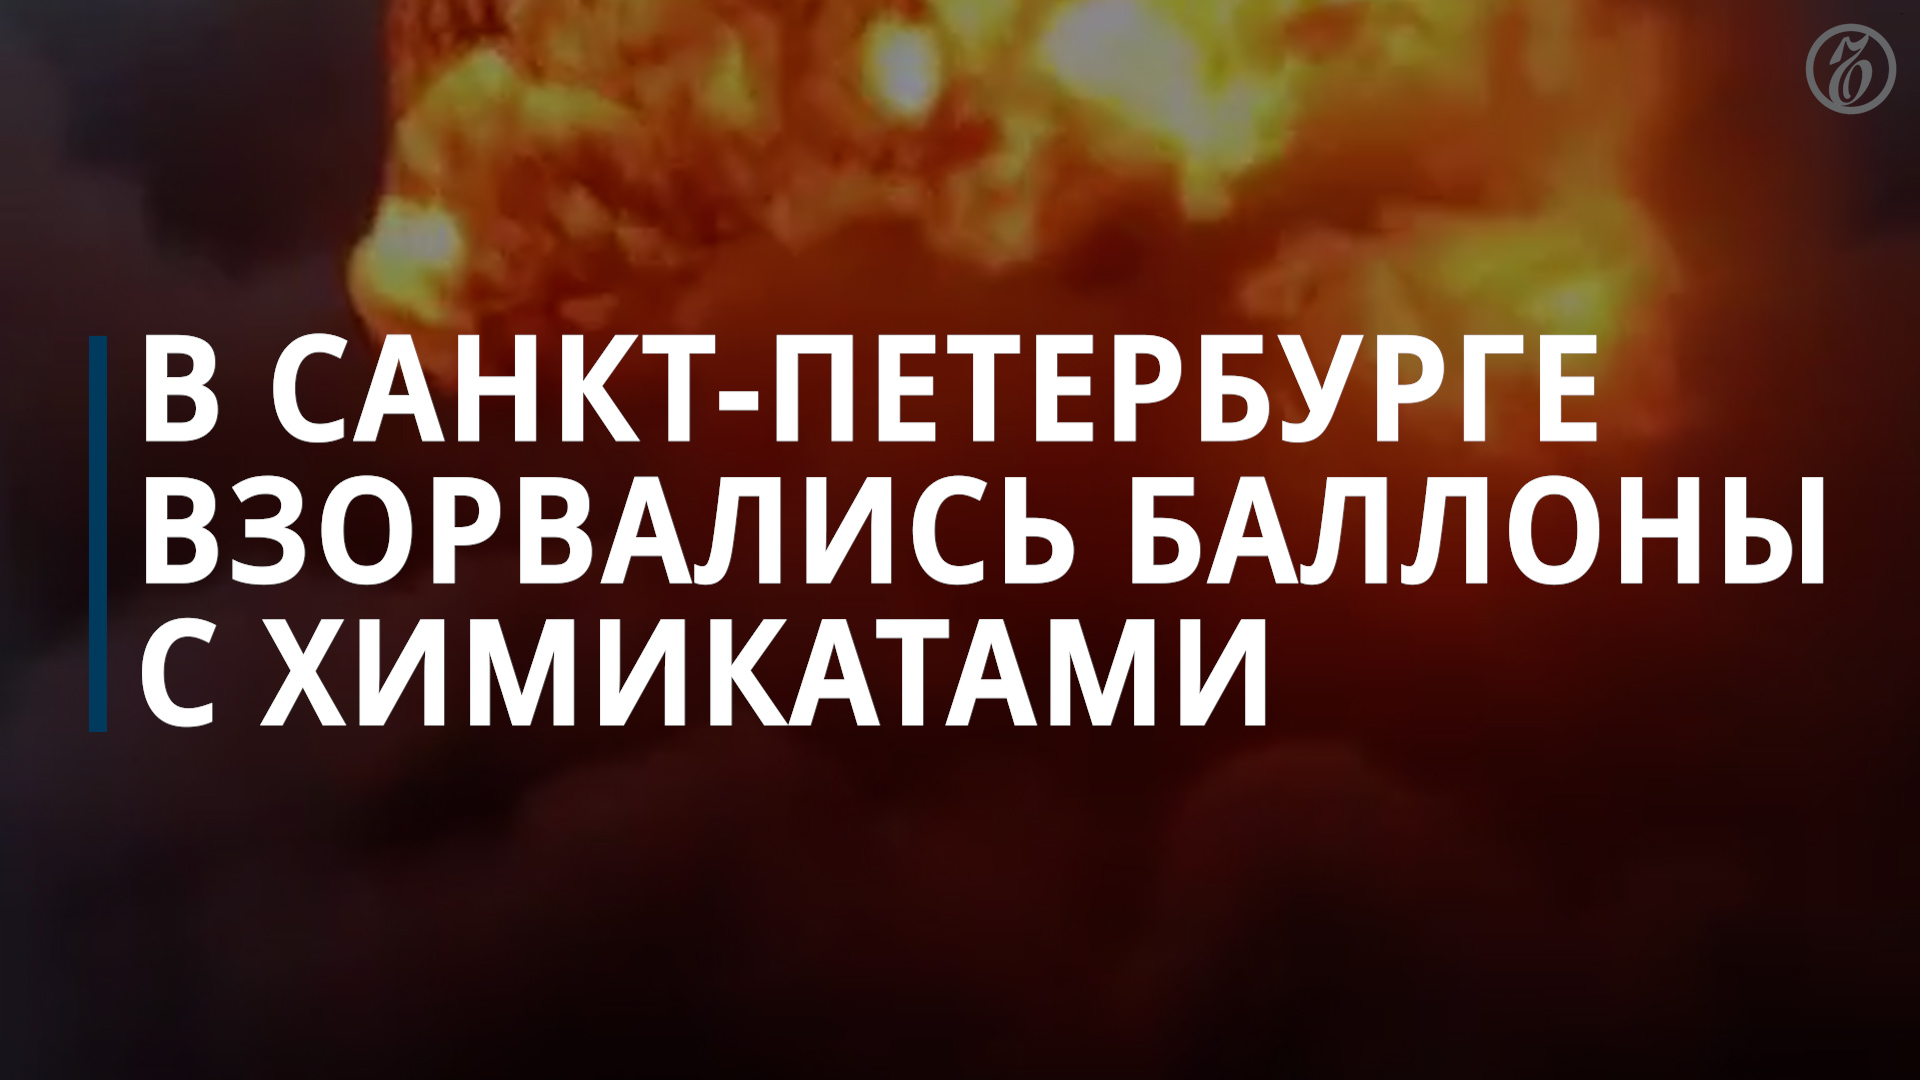 В Петербурге произошел взрыв — Коммерсантъ